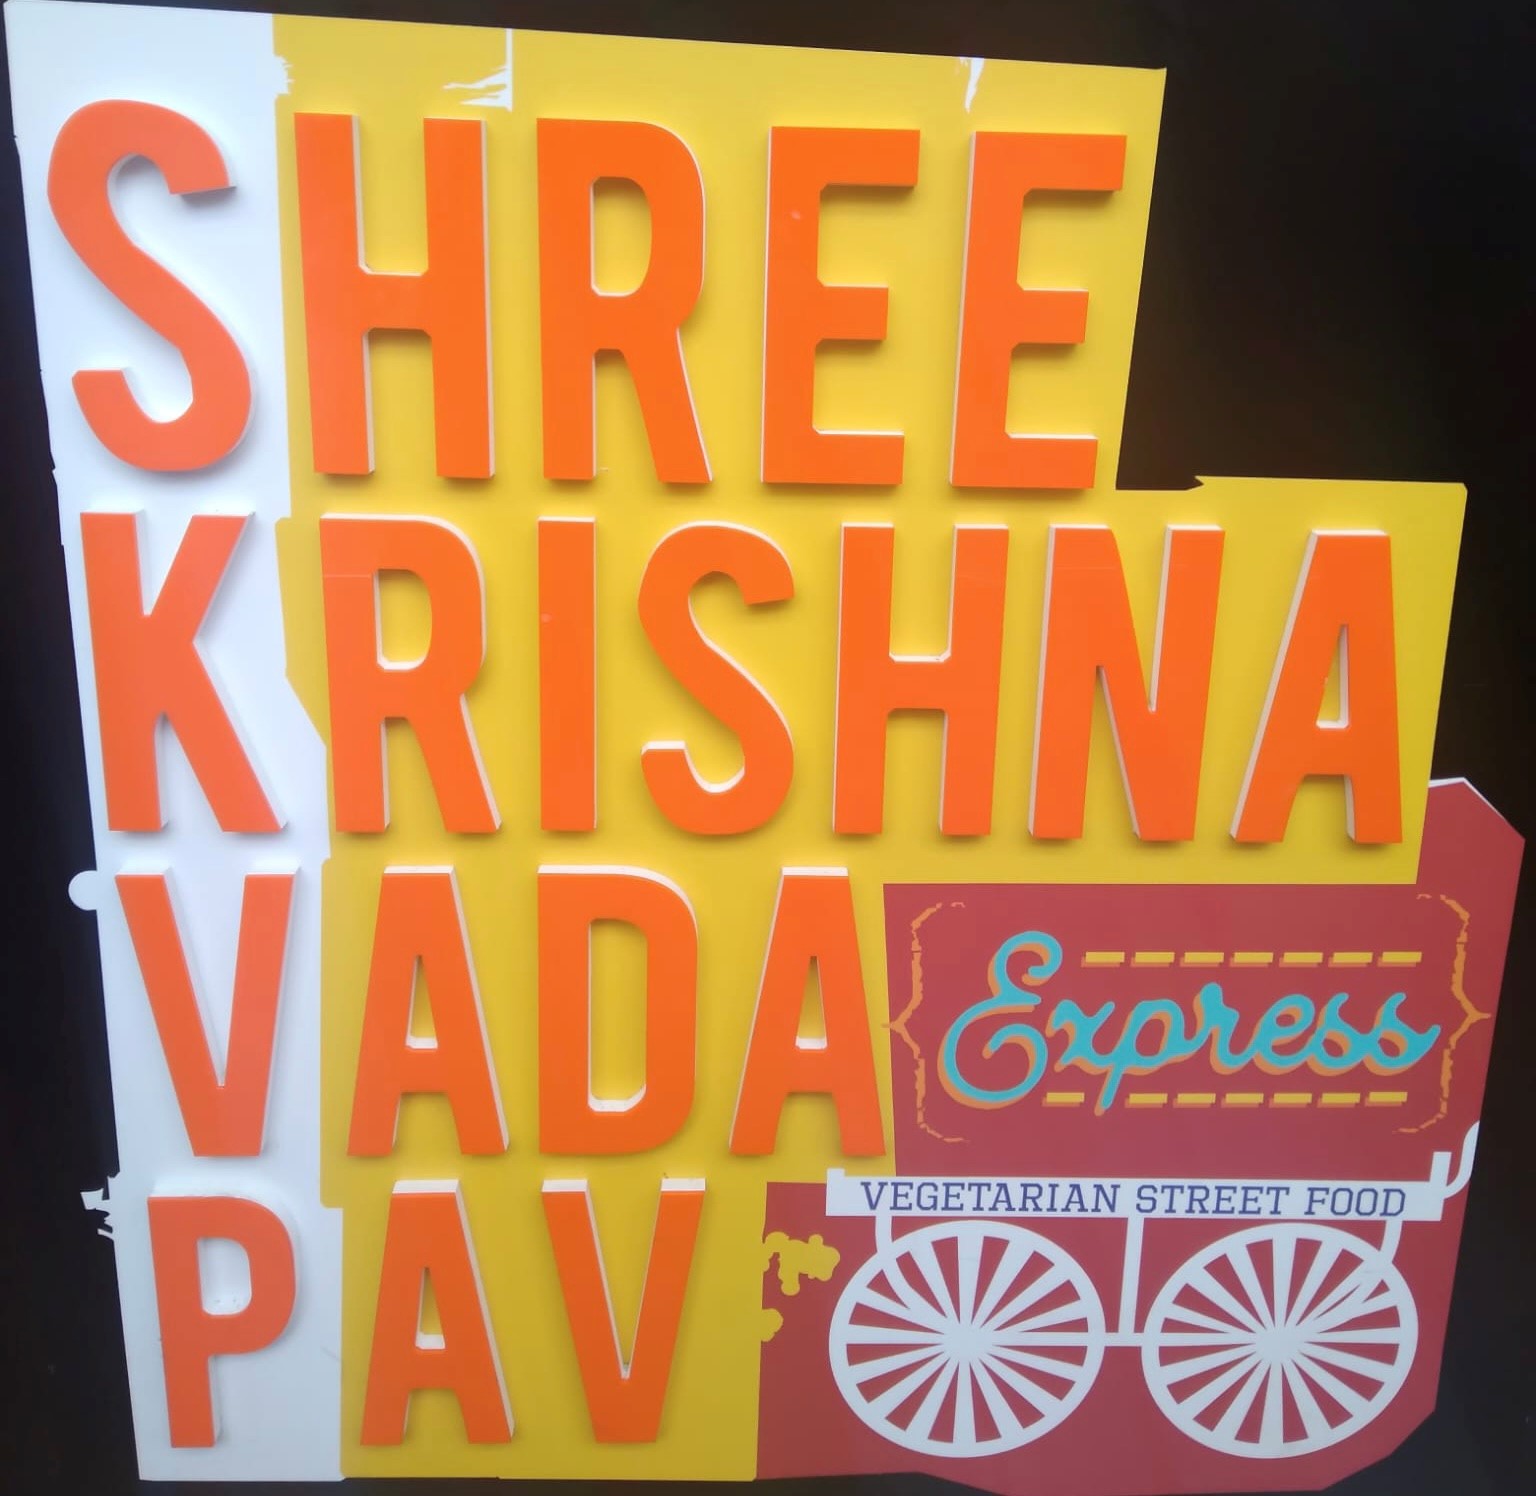 Shree Krishna Vada Pav